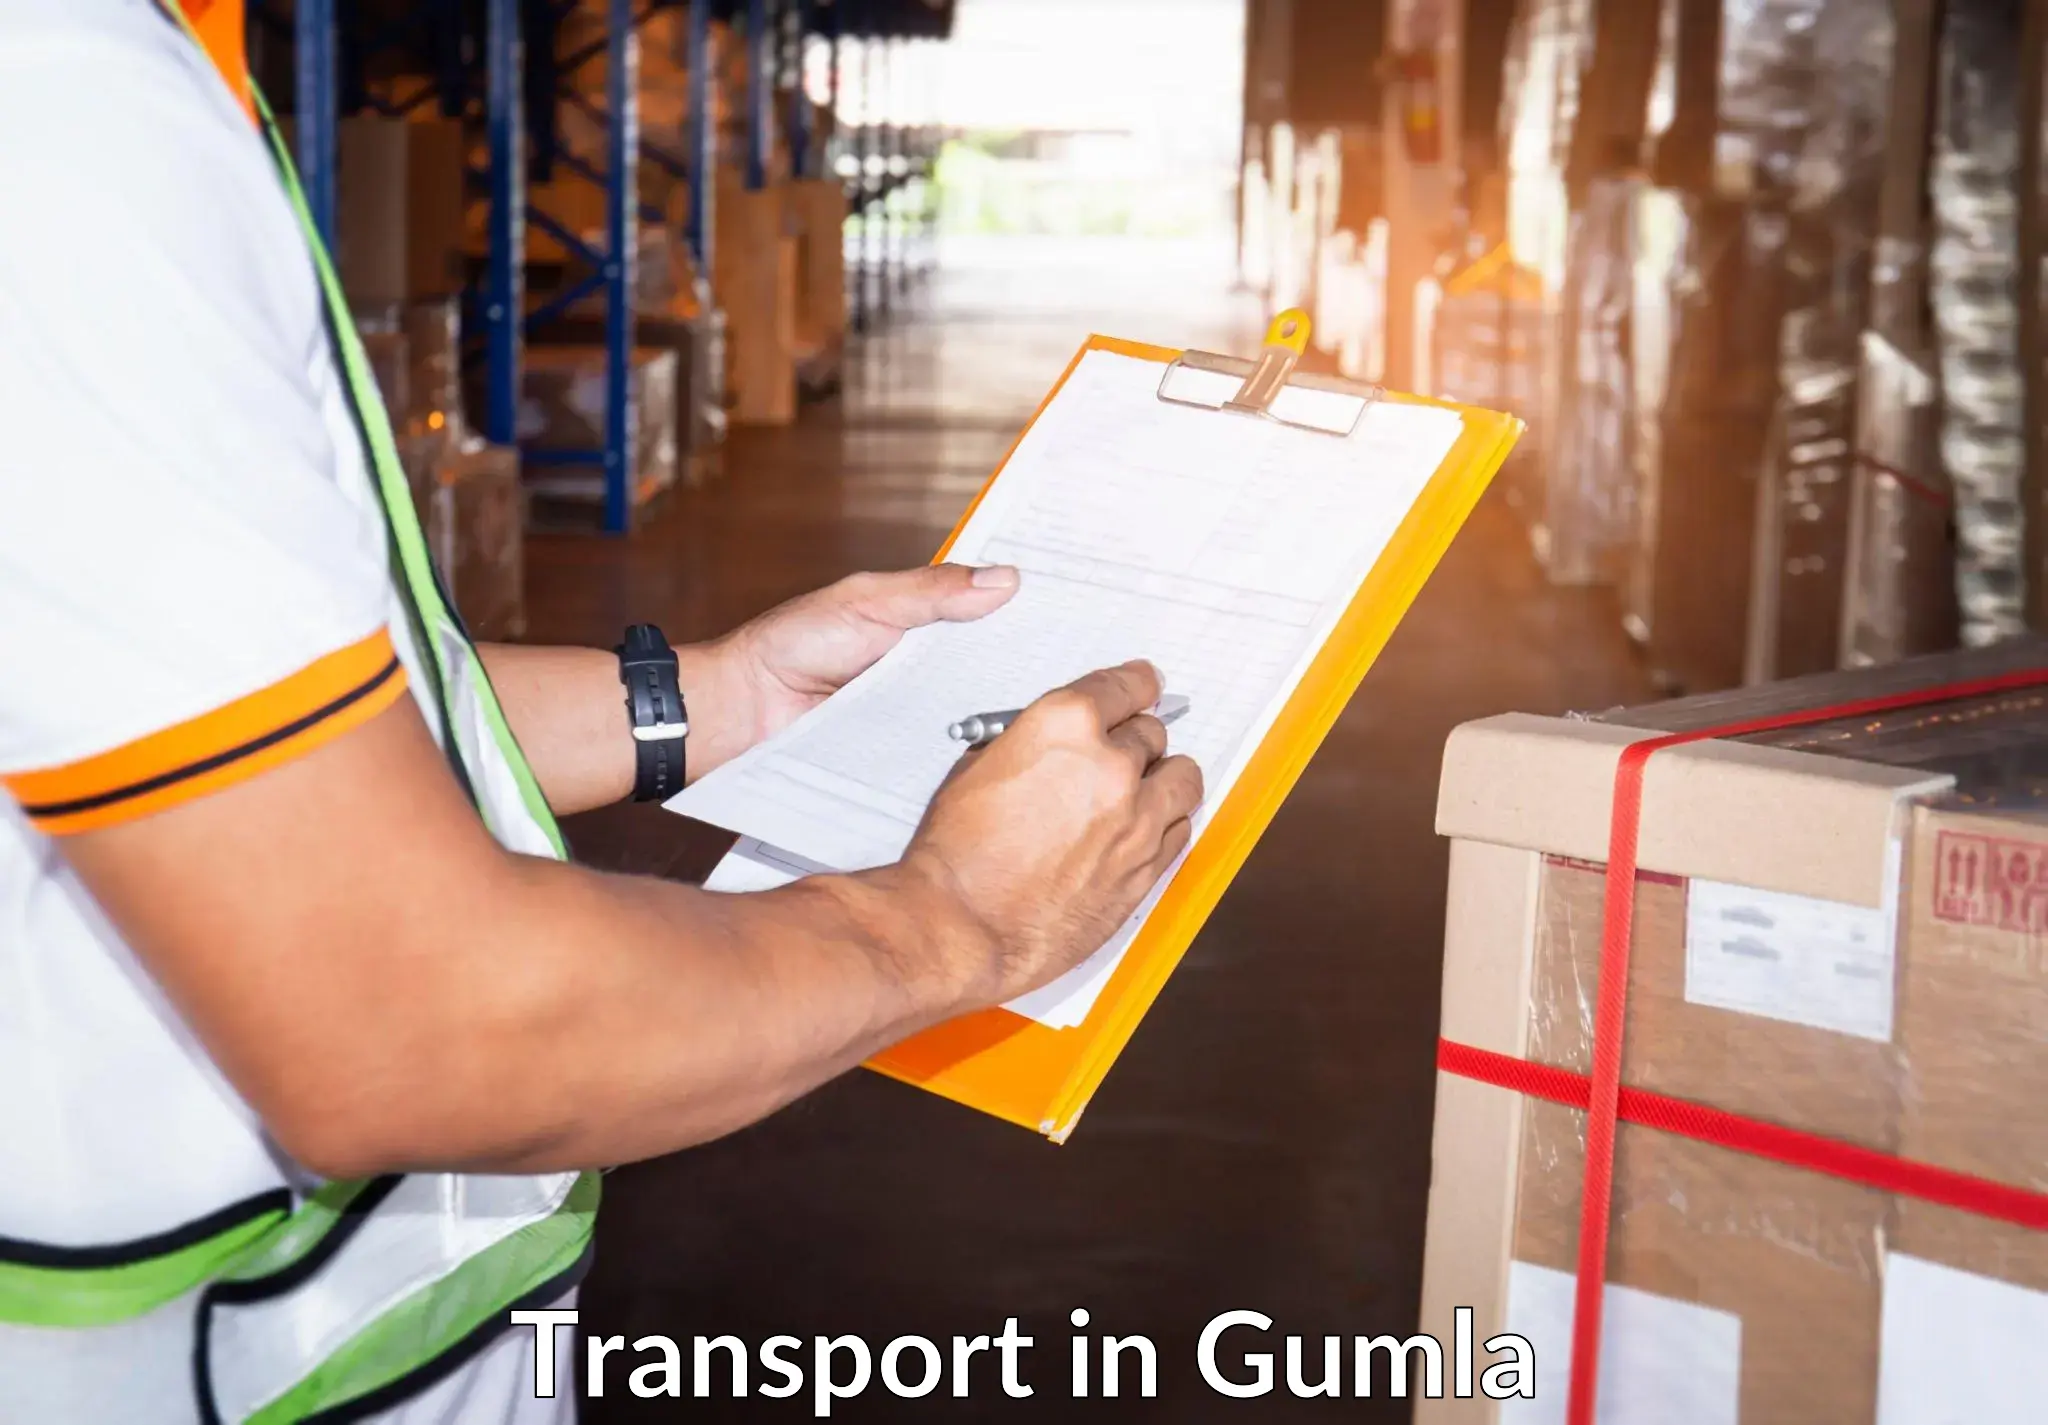 Nationwide transport services in Gumla